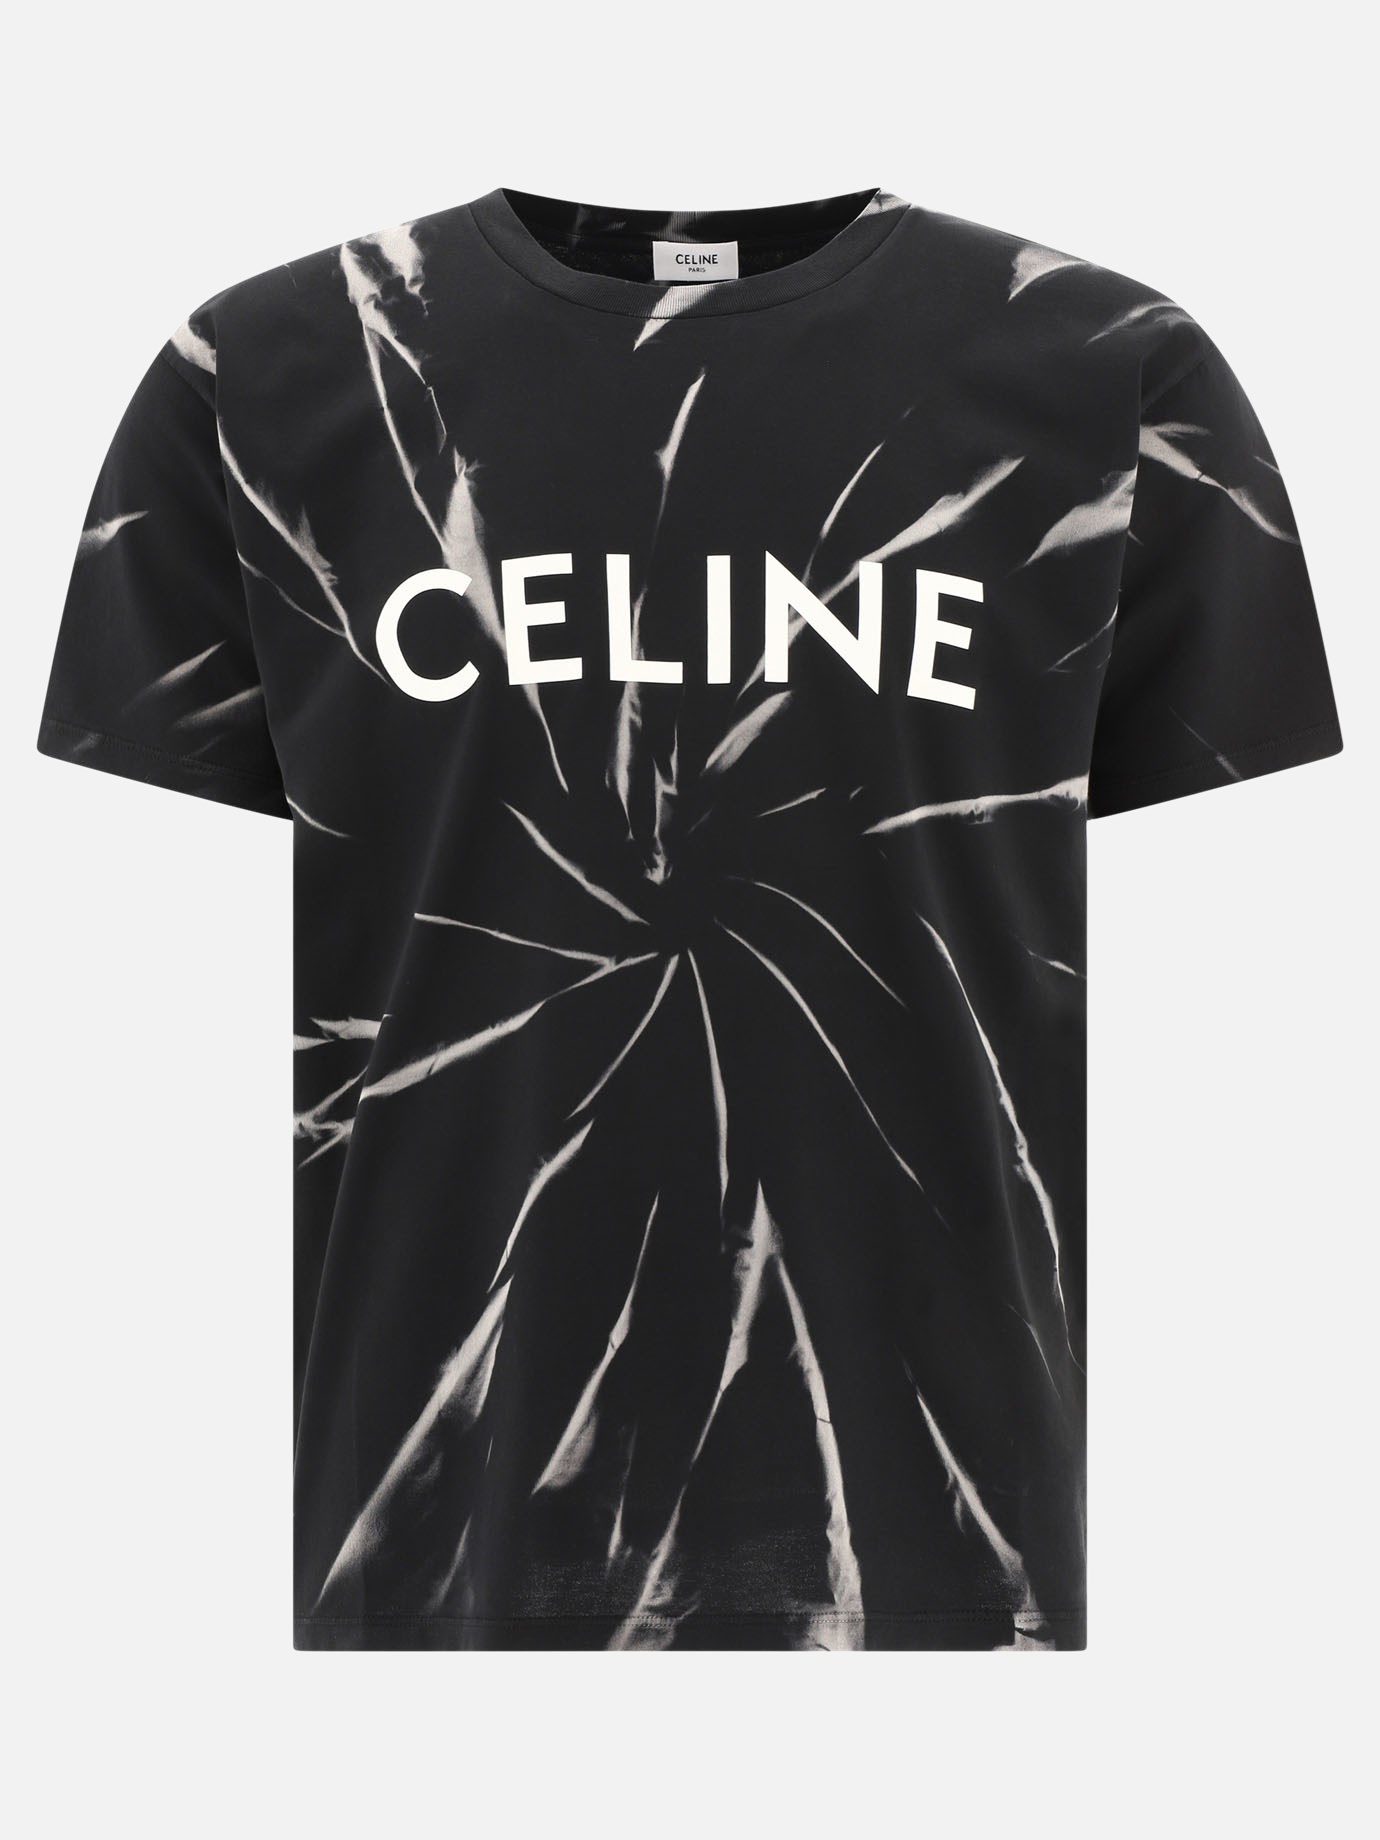  Celine Tie-dye  t-shirt by Celine